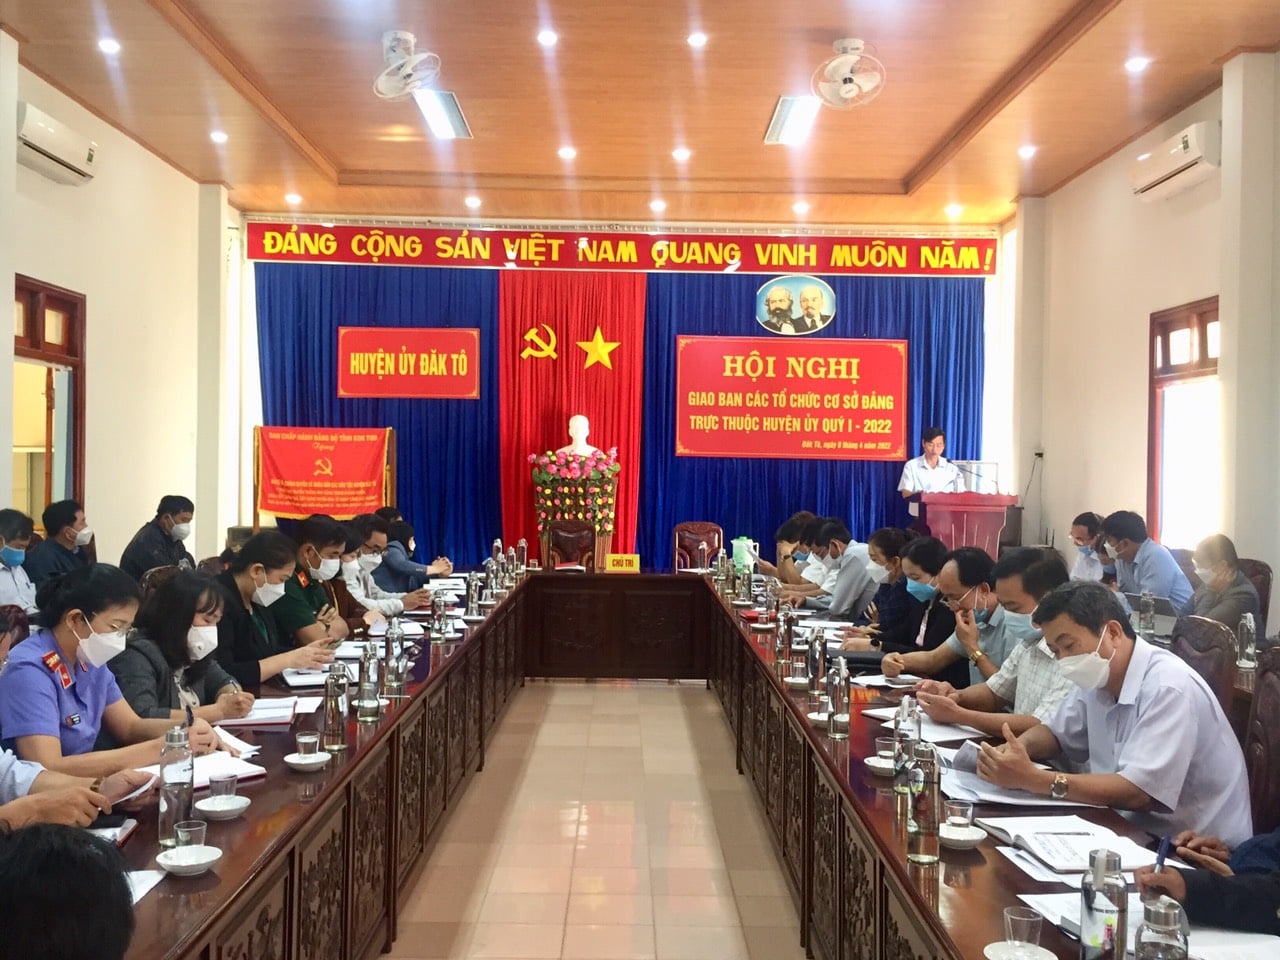 Hội nghị giao ban các tổ chức cơ sở đảng trực thuộc Huyện ủy Quý I - 2022